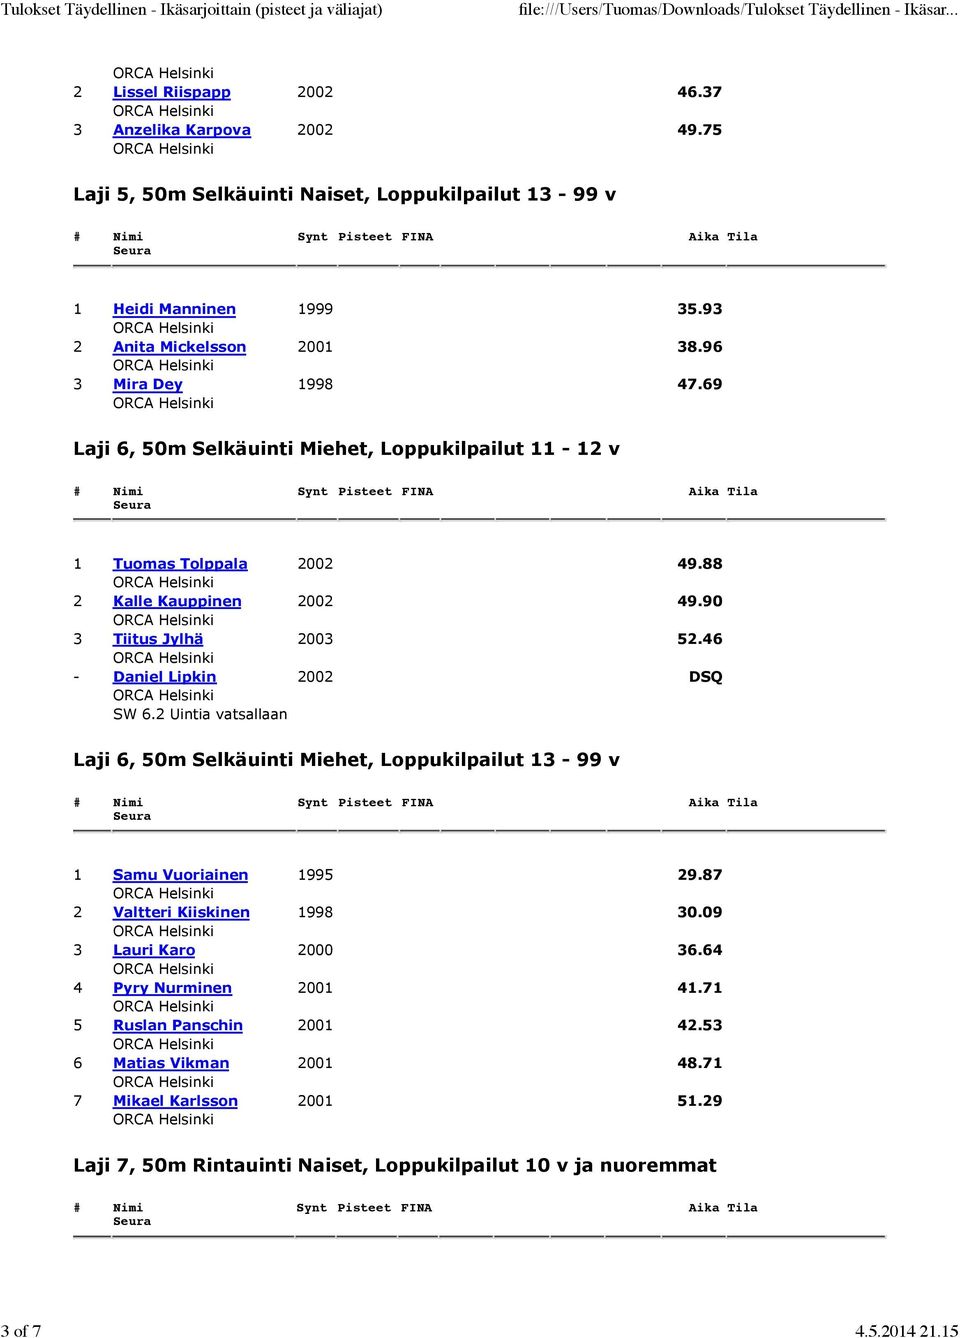 46 - Daniel Lipkin 2002 DSQ SW 6.2 Uintia vatsallaan Laji 6, 50m Selkäuinti Miehet, Loppukilpailut 13-99 v 1 Samu Vuoriainen 1995 29.87 2 Valtteri Kiiskinen 1998 30.